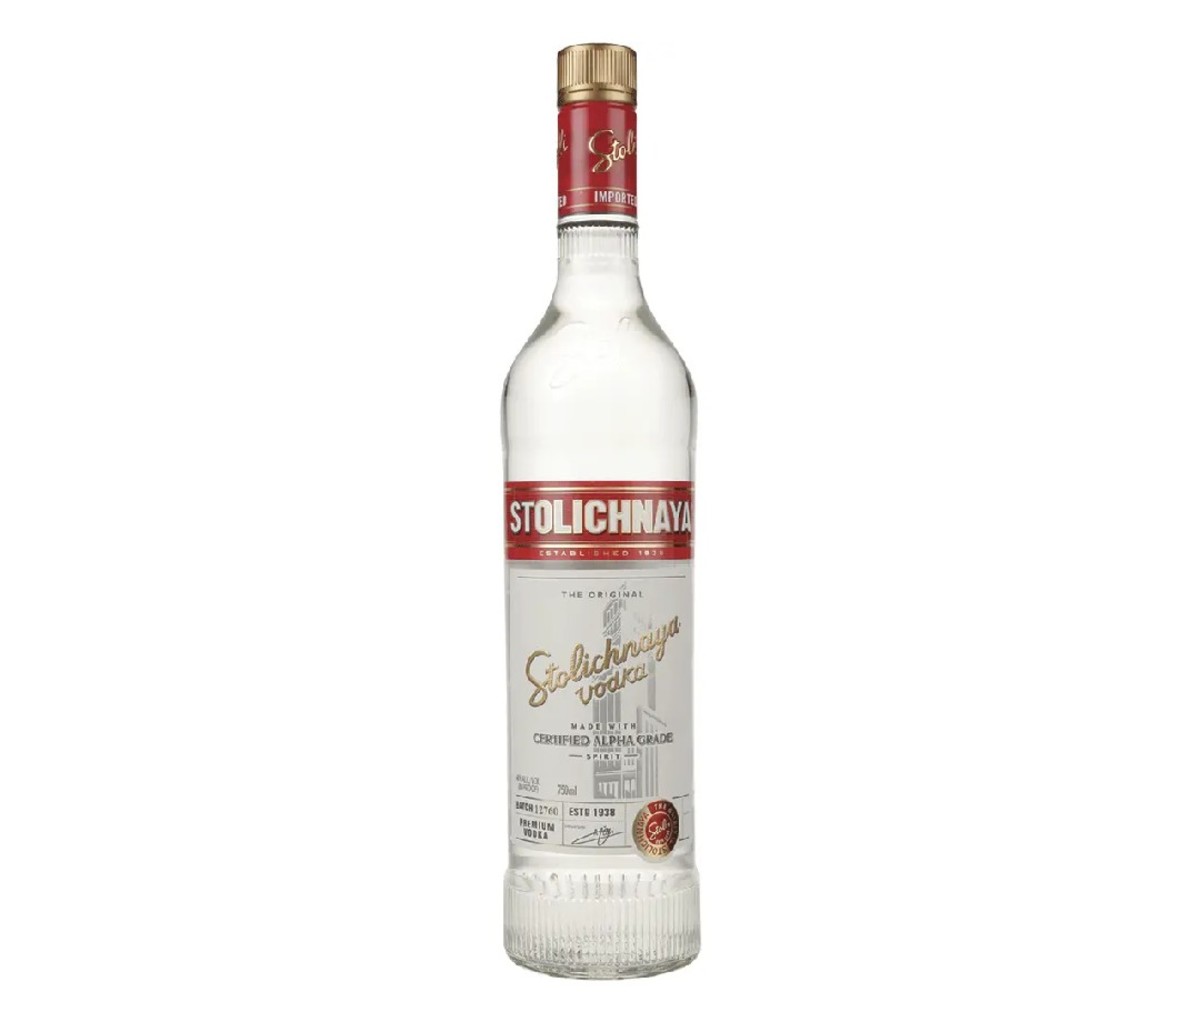 A bottle of Stolichnaya vodka